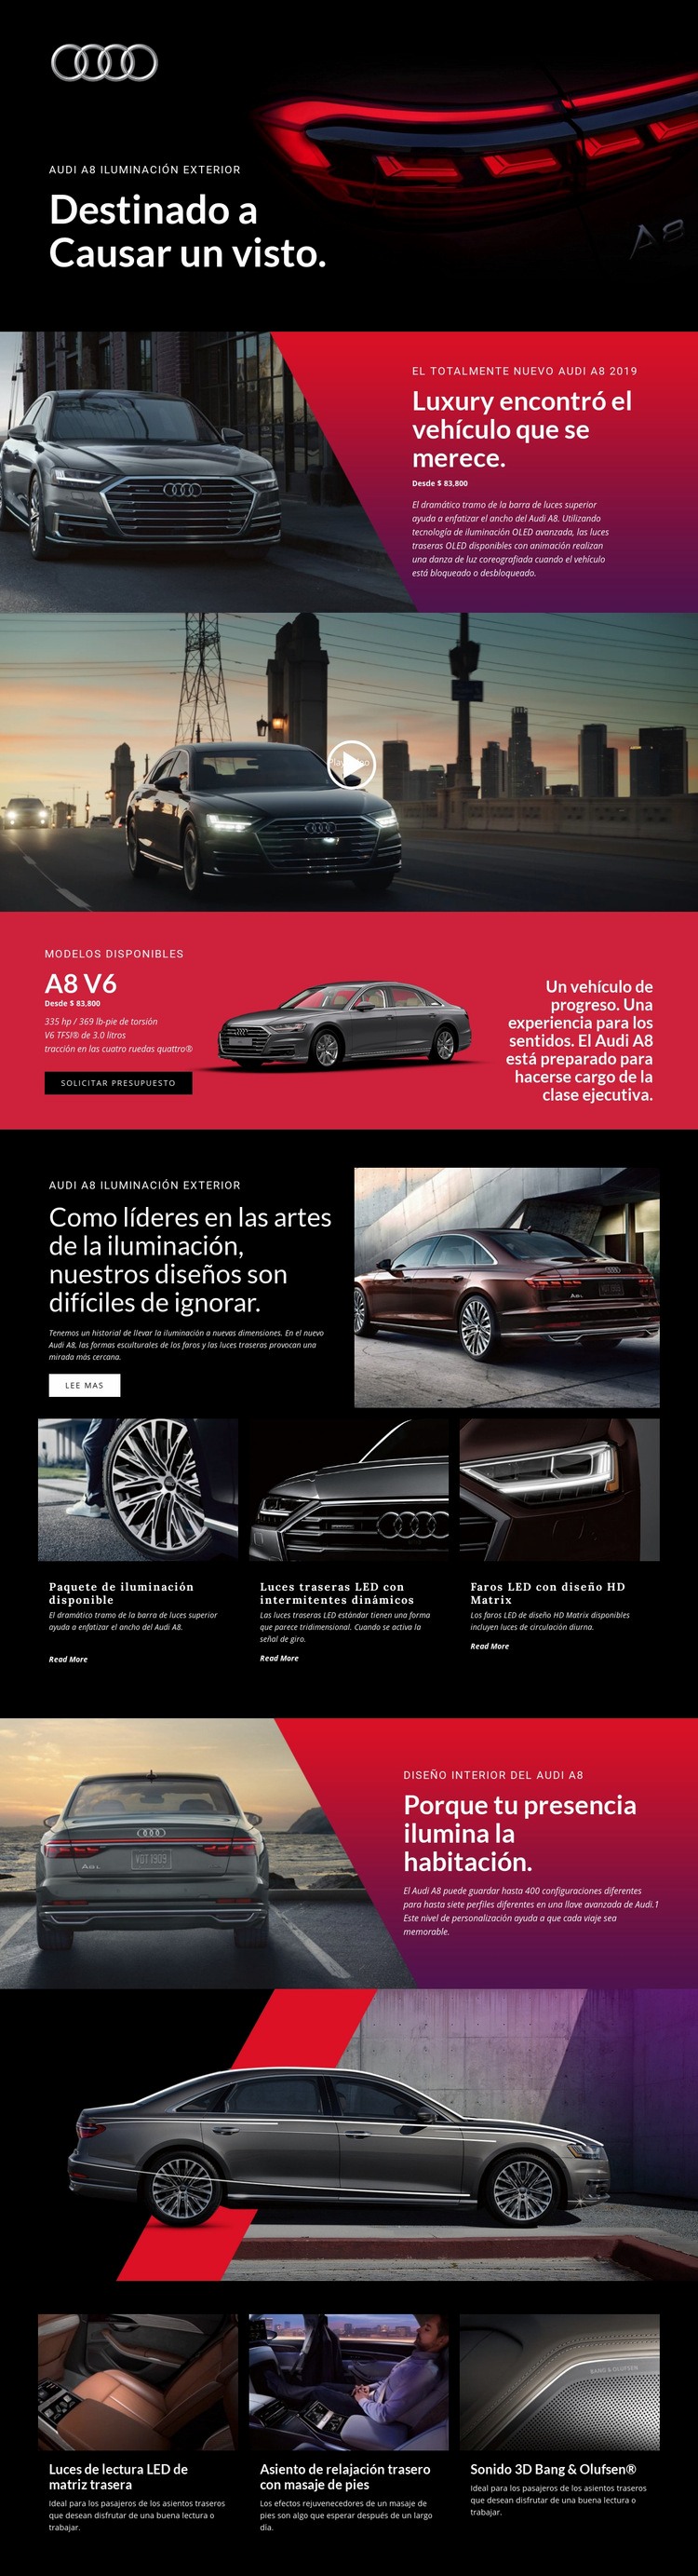 Coches de lujo Audi Plantilla HTML5